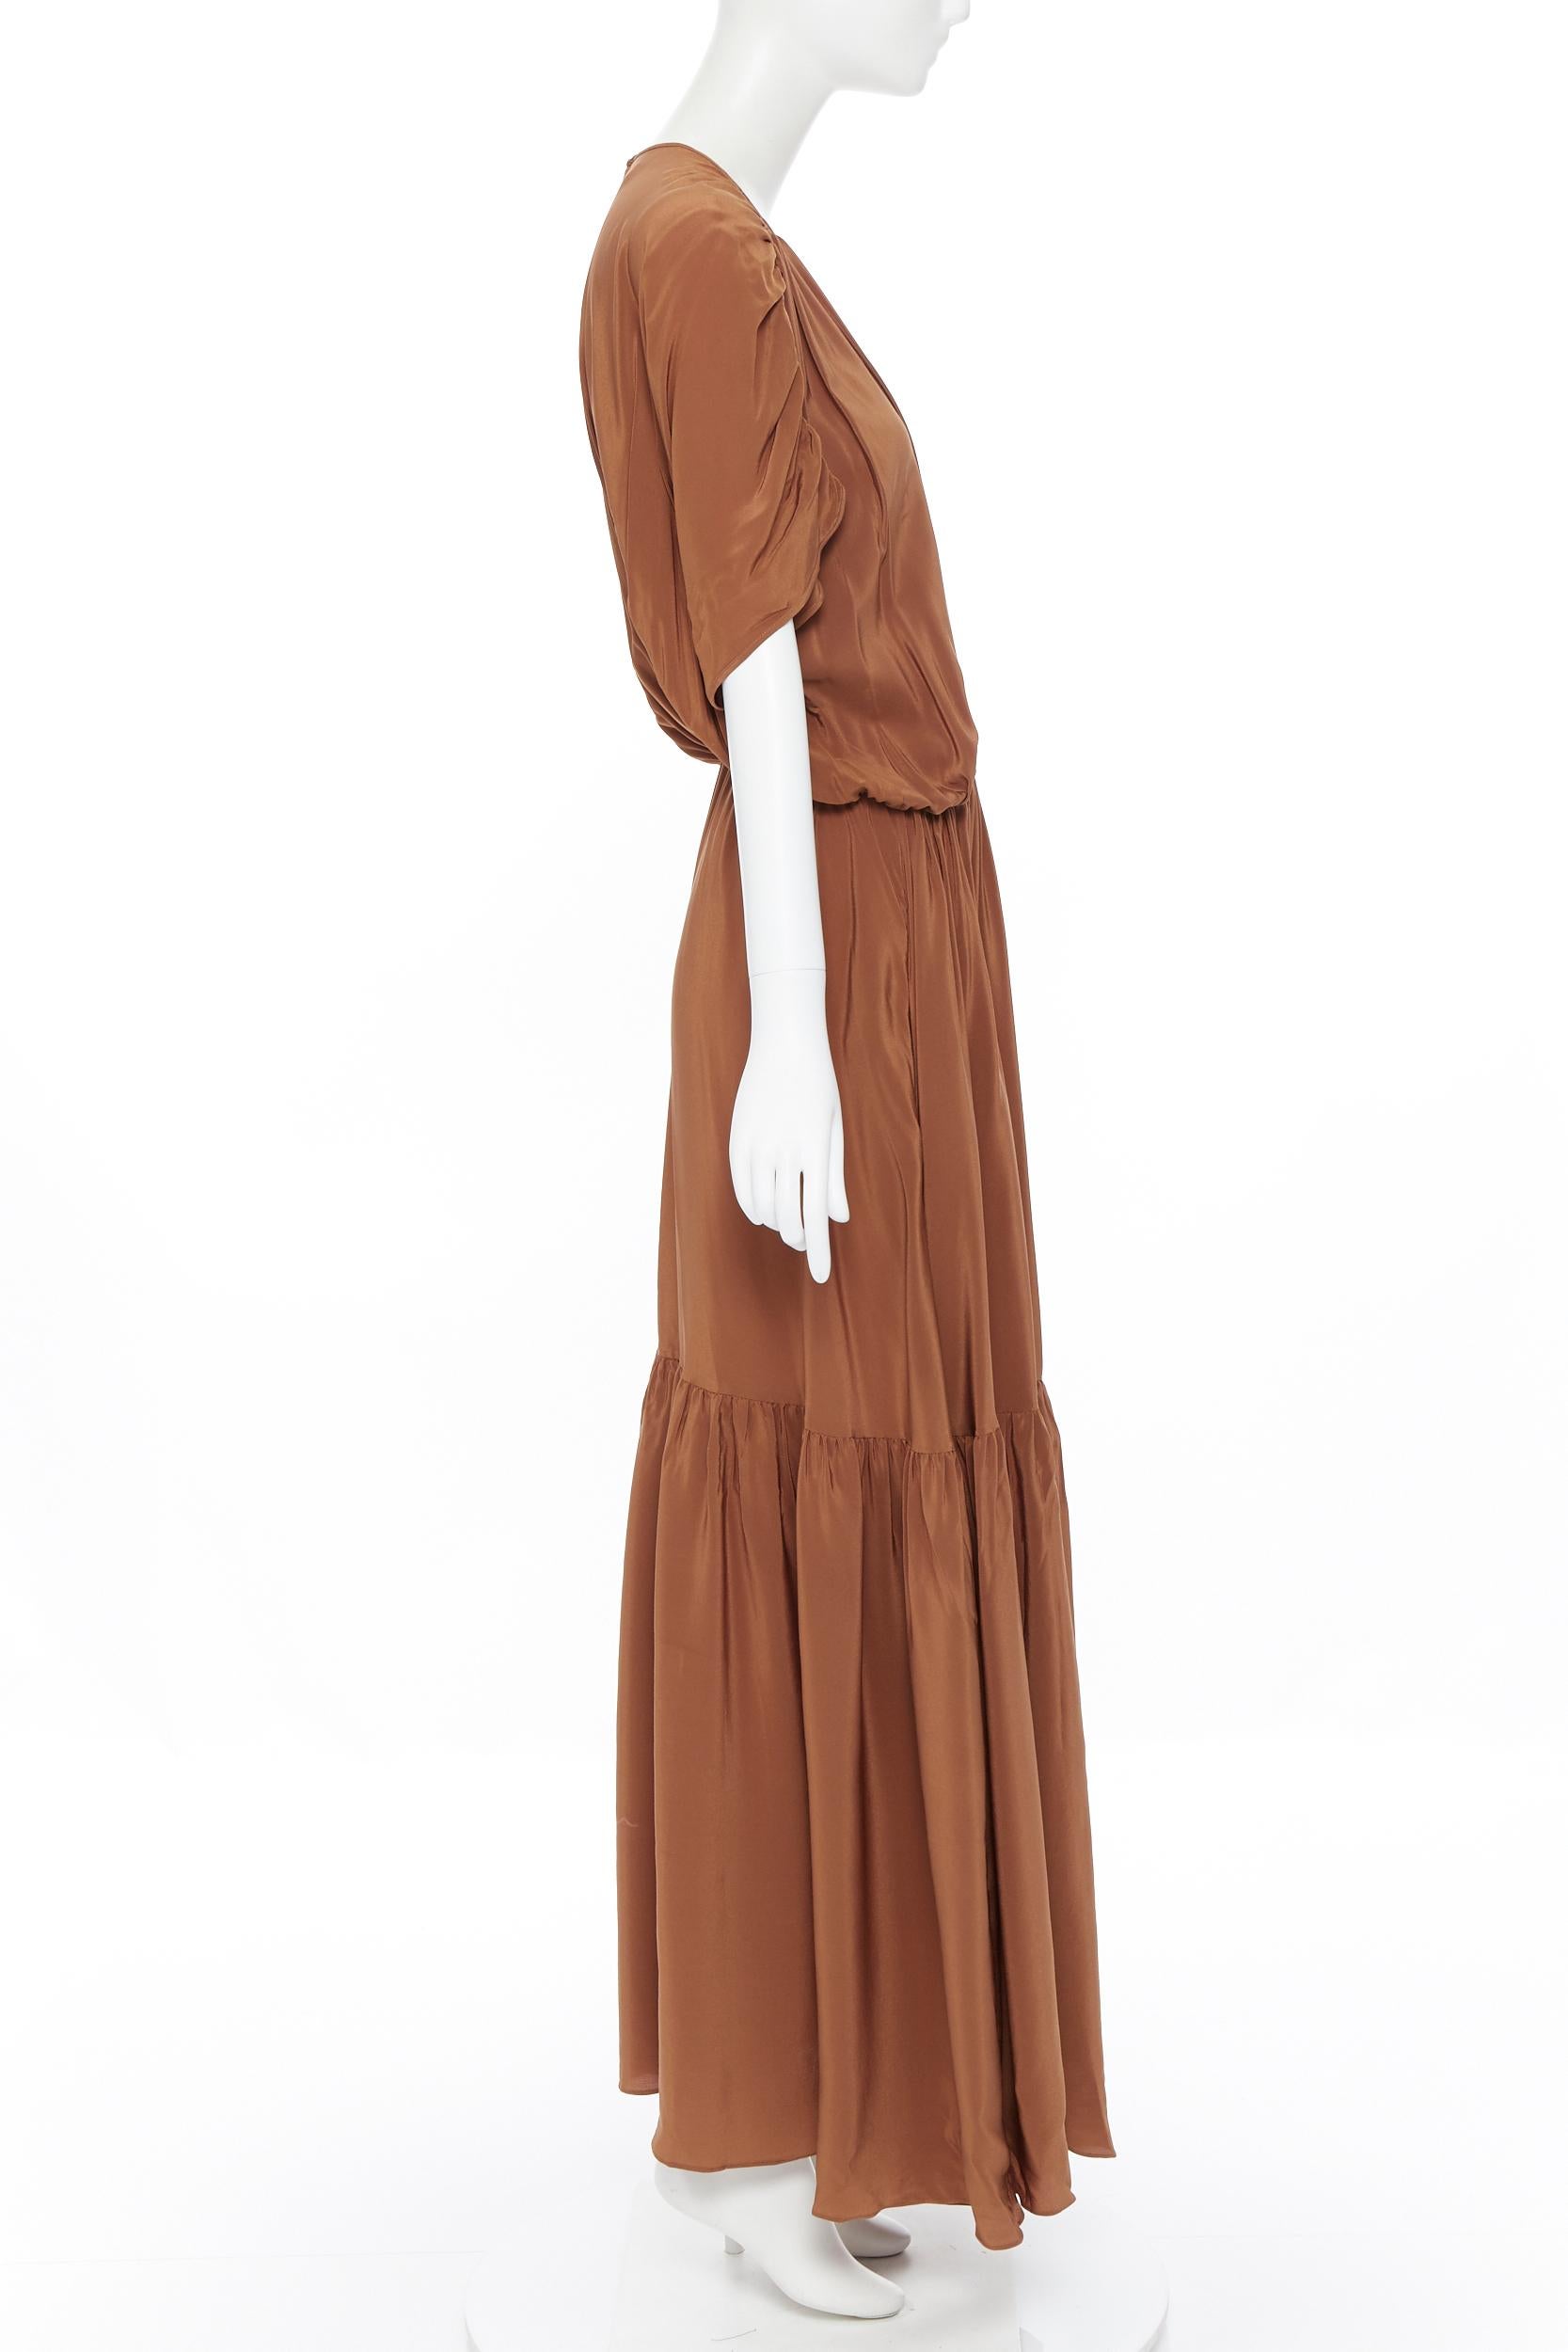 short brown dress